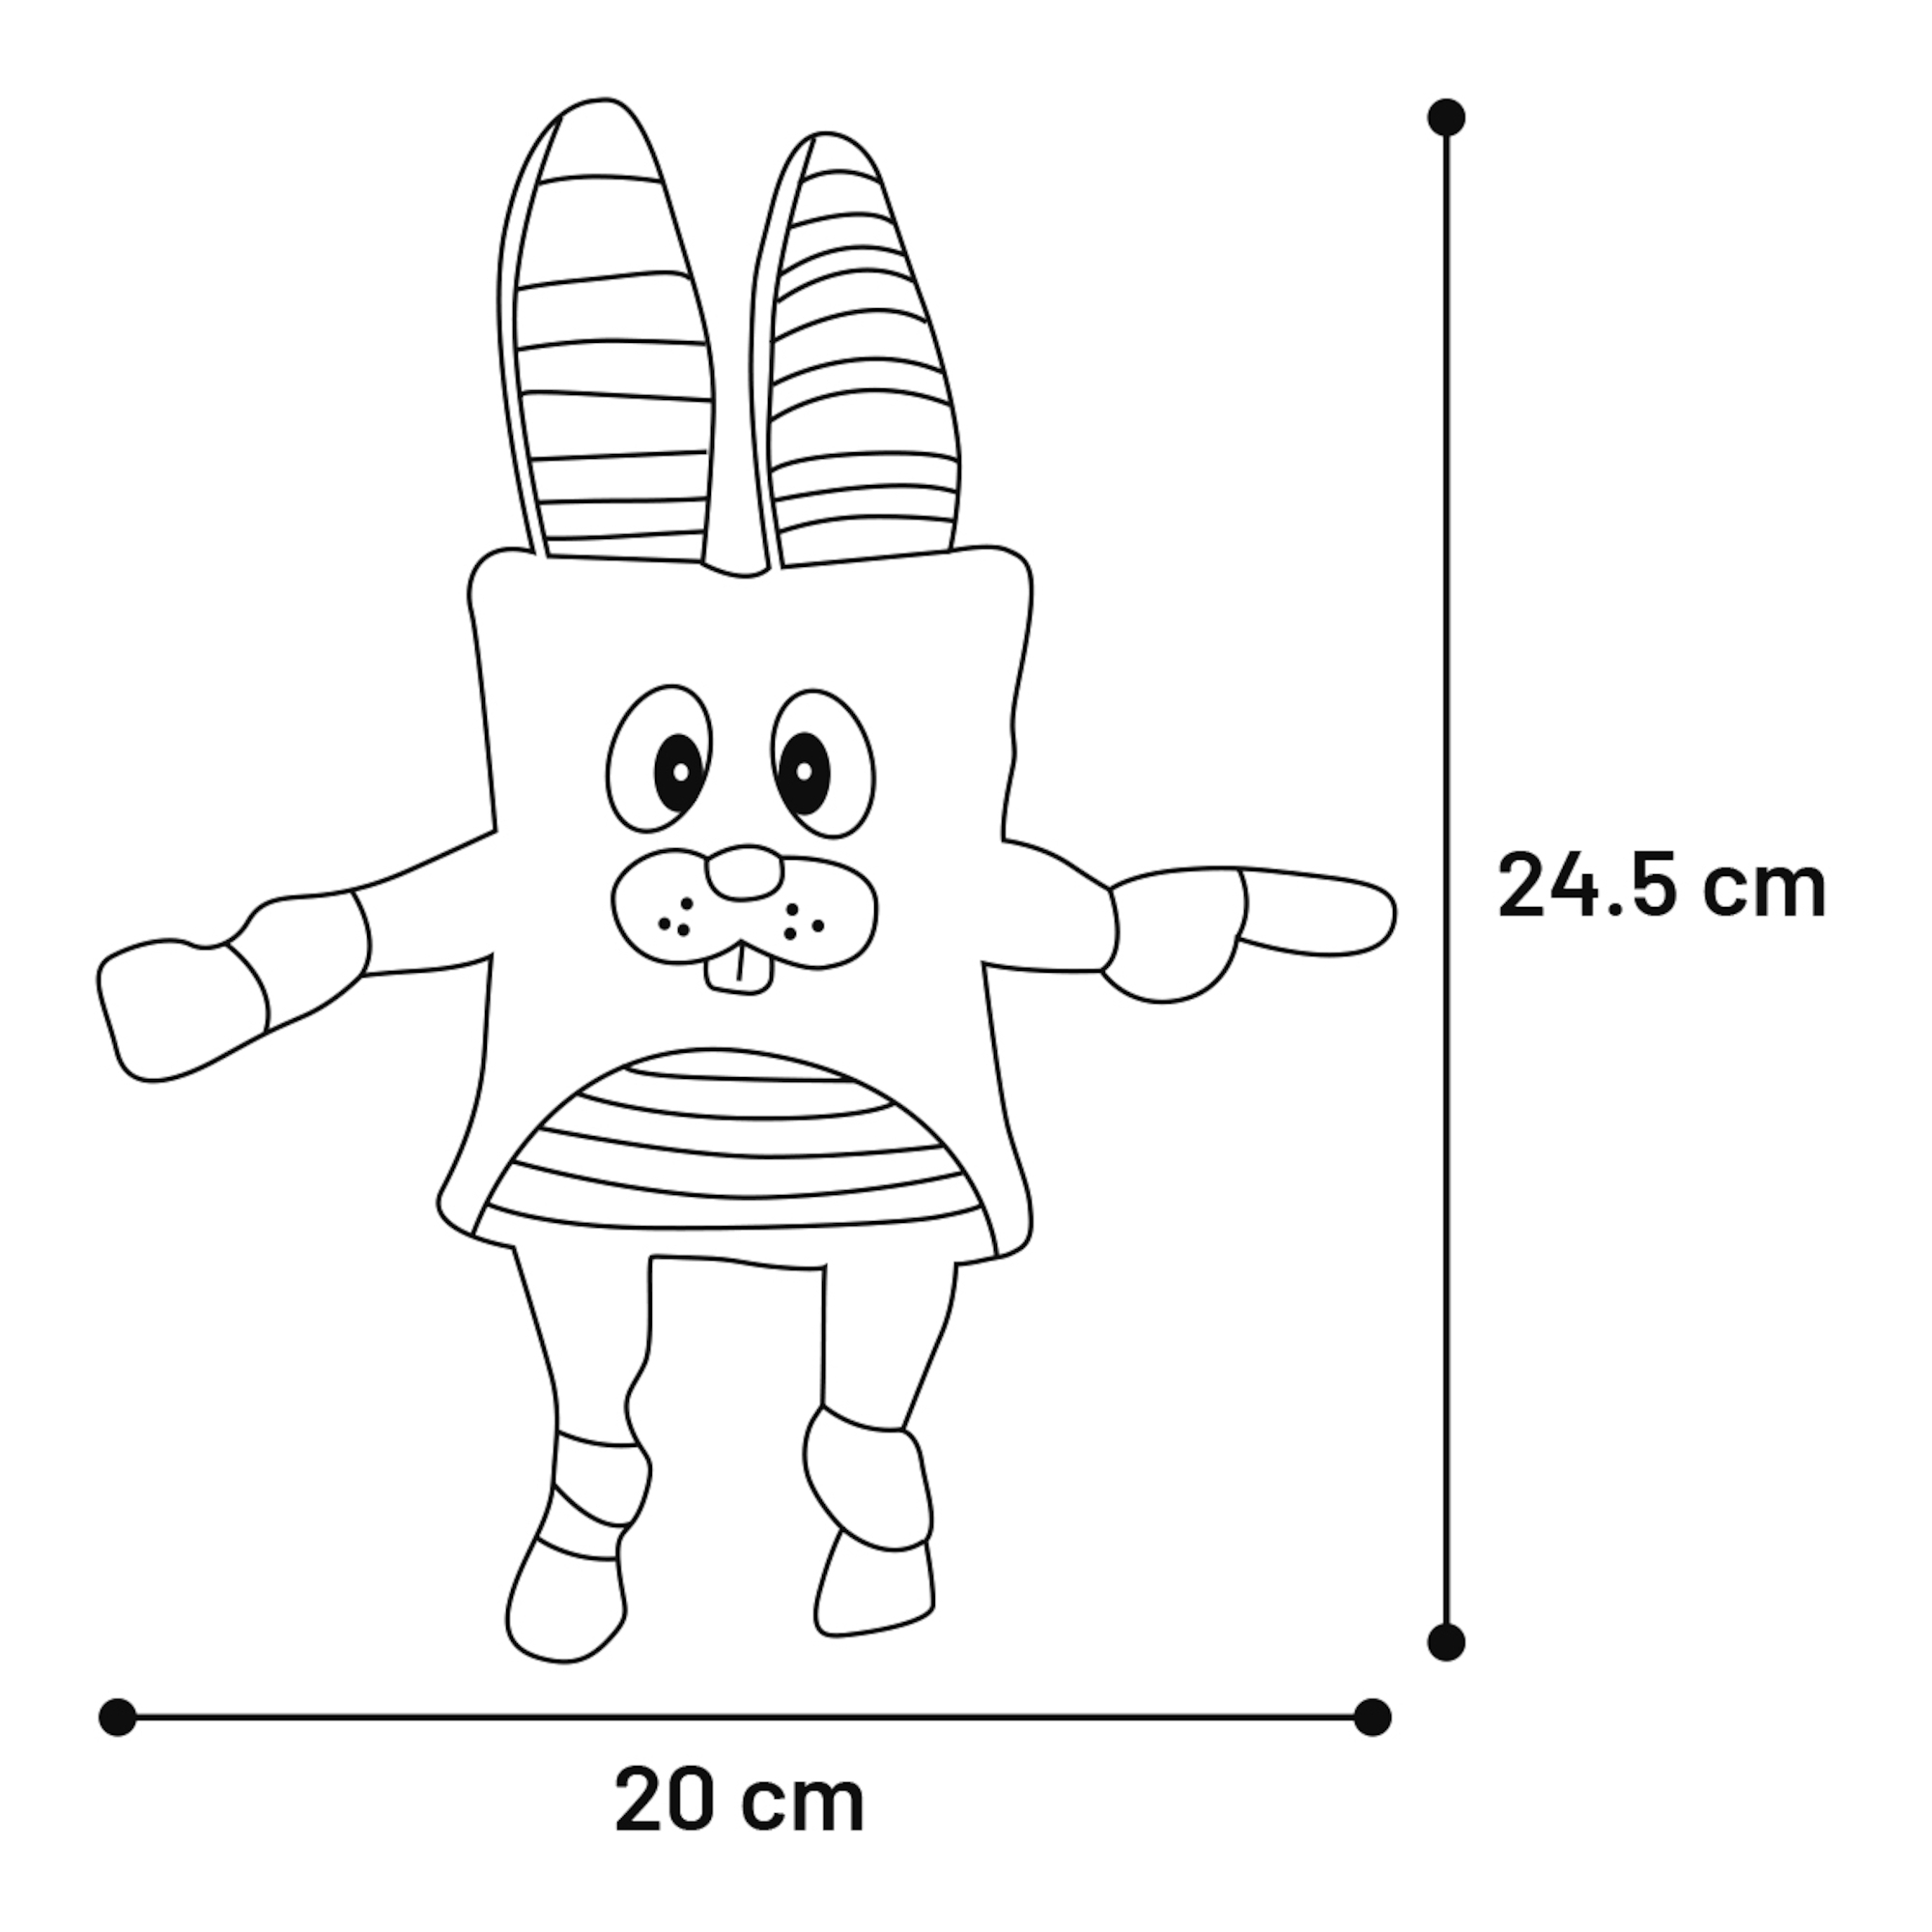 Giocattolo Pieno Rabbit grigio con squeaker - 24,5 cm